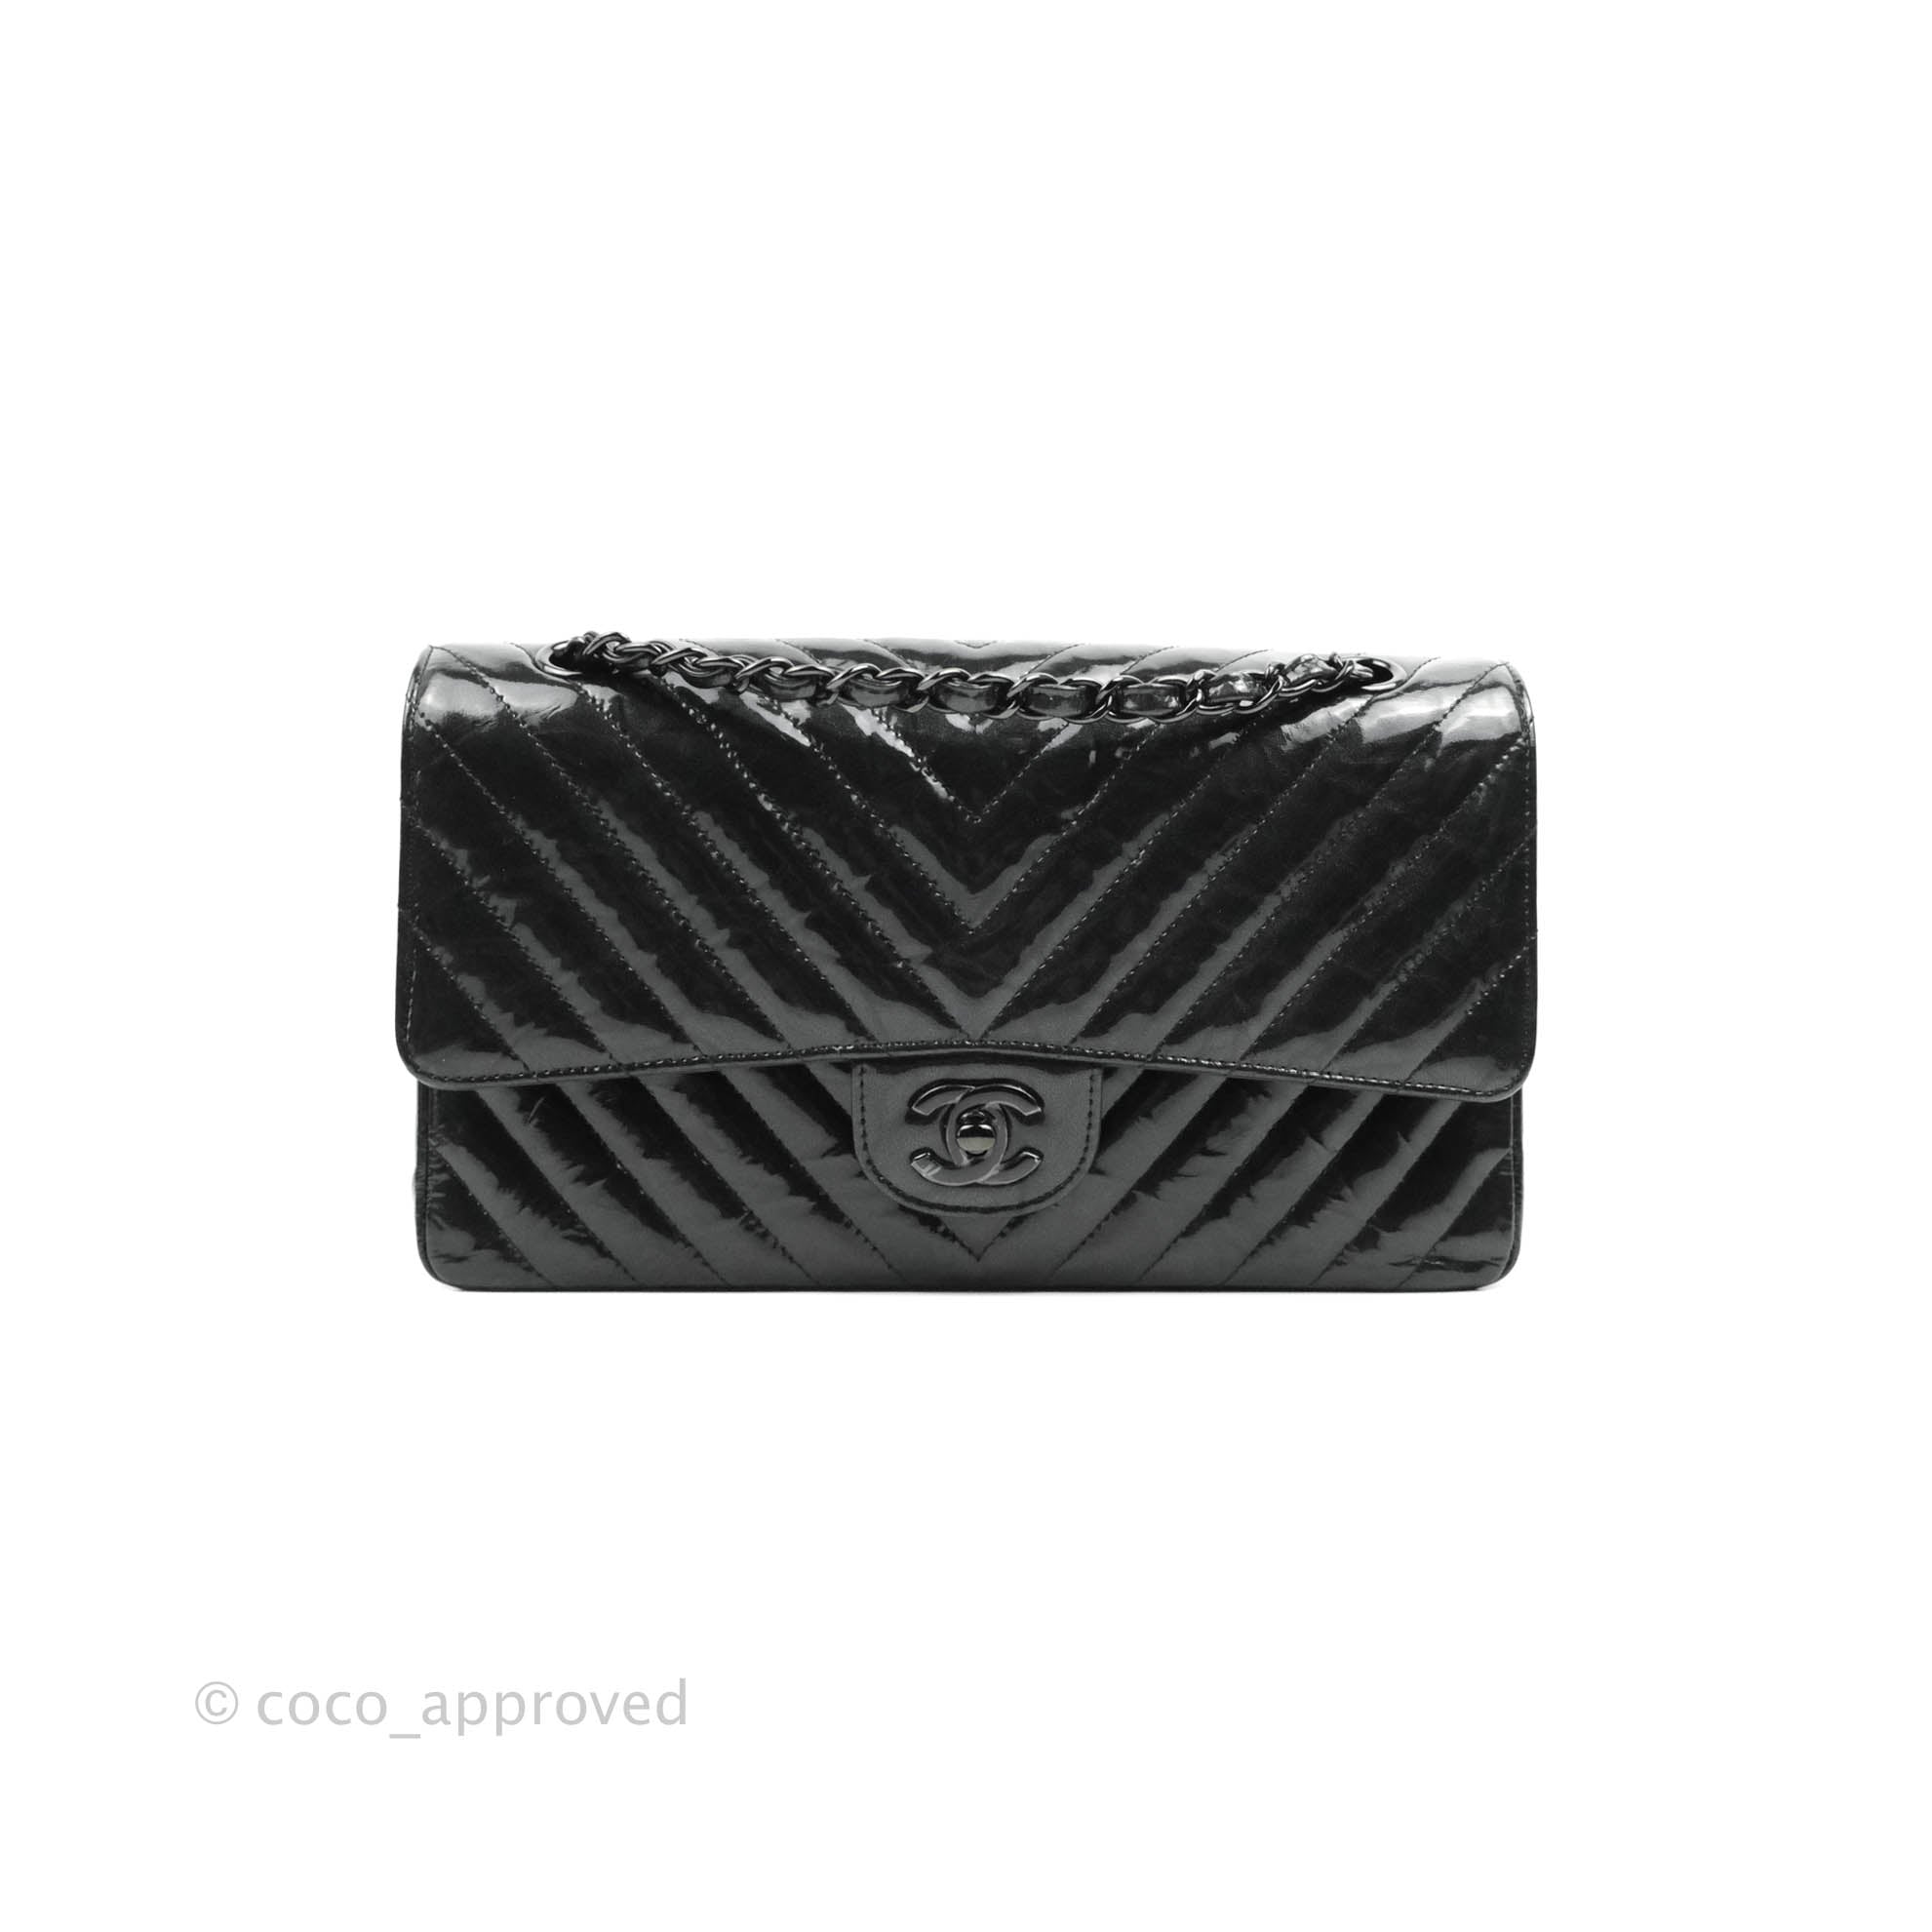 Chanel Vintage Classic Double Flap Bag Chevron Patent Medium Black